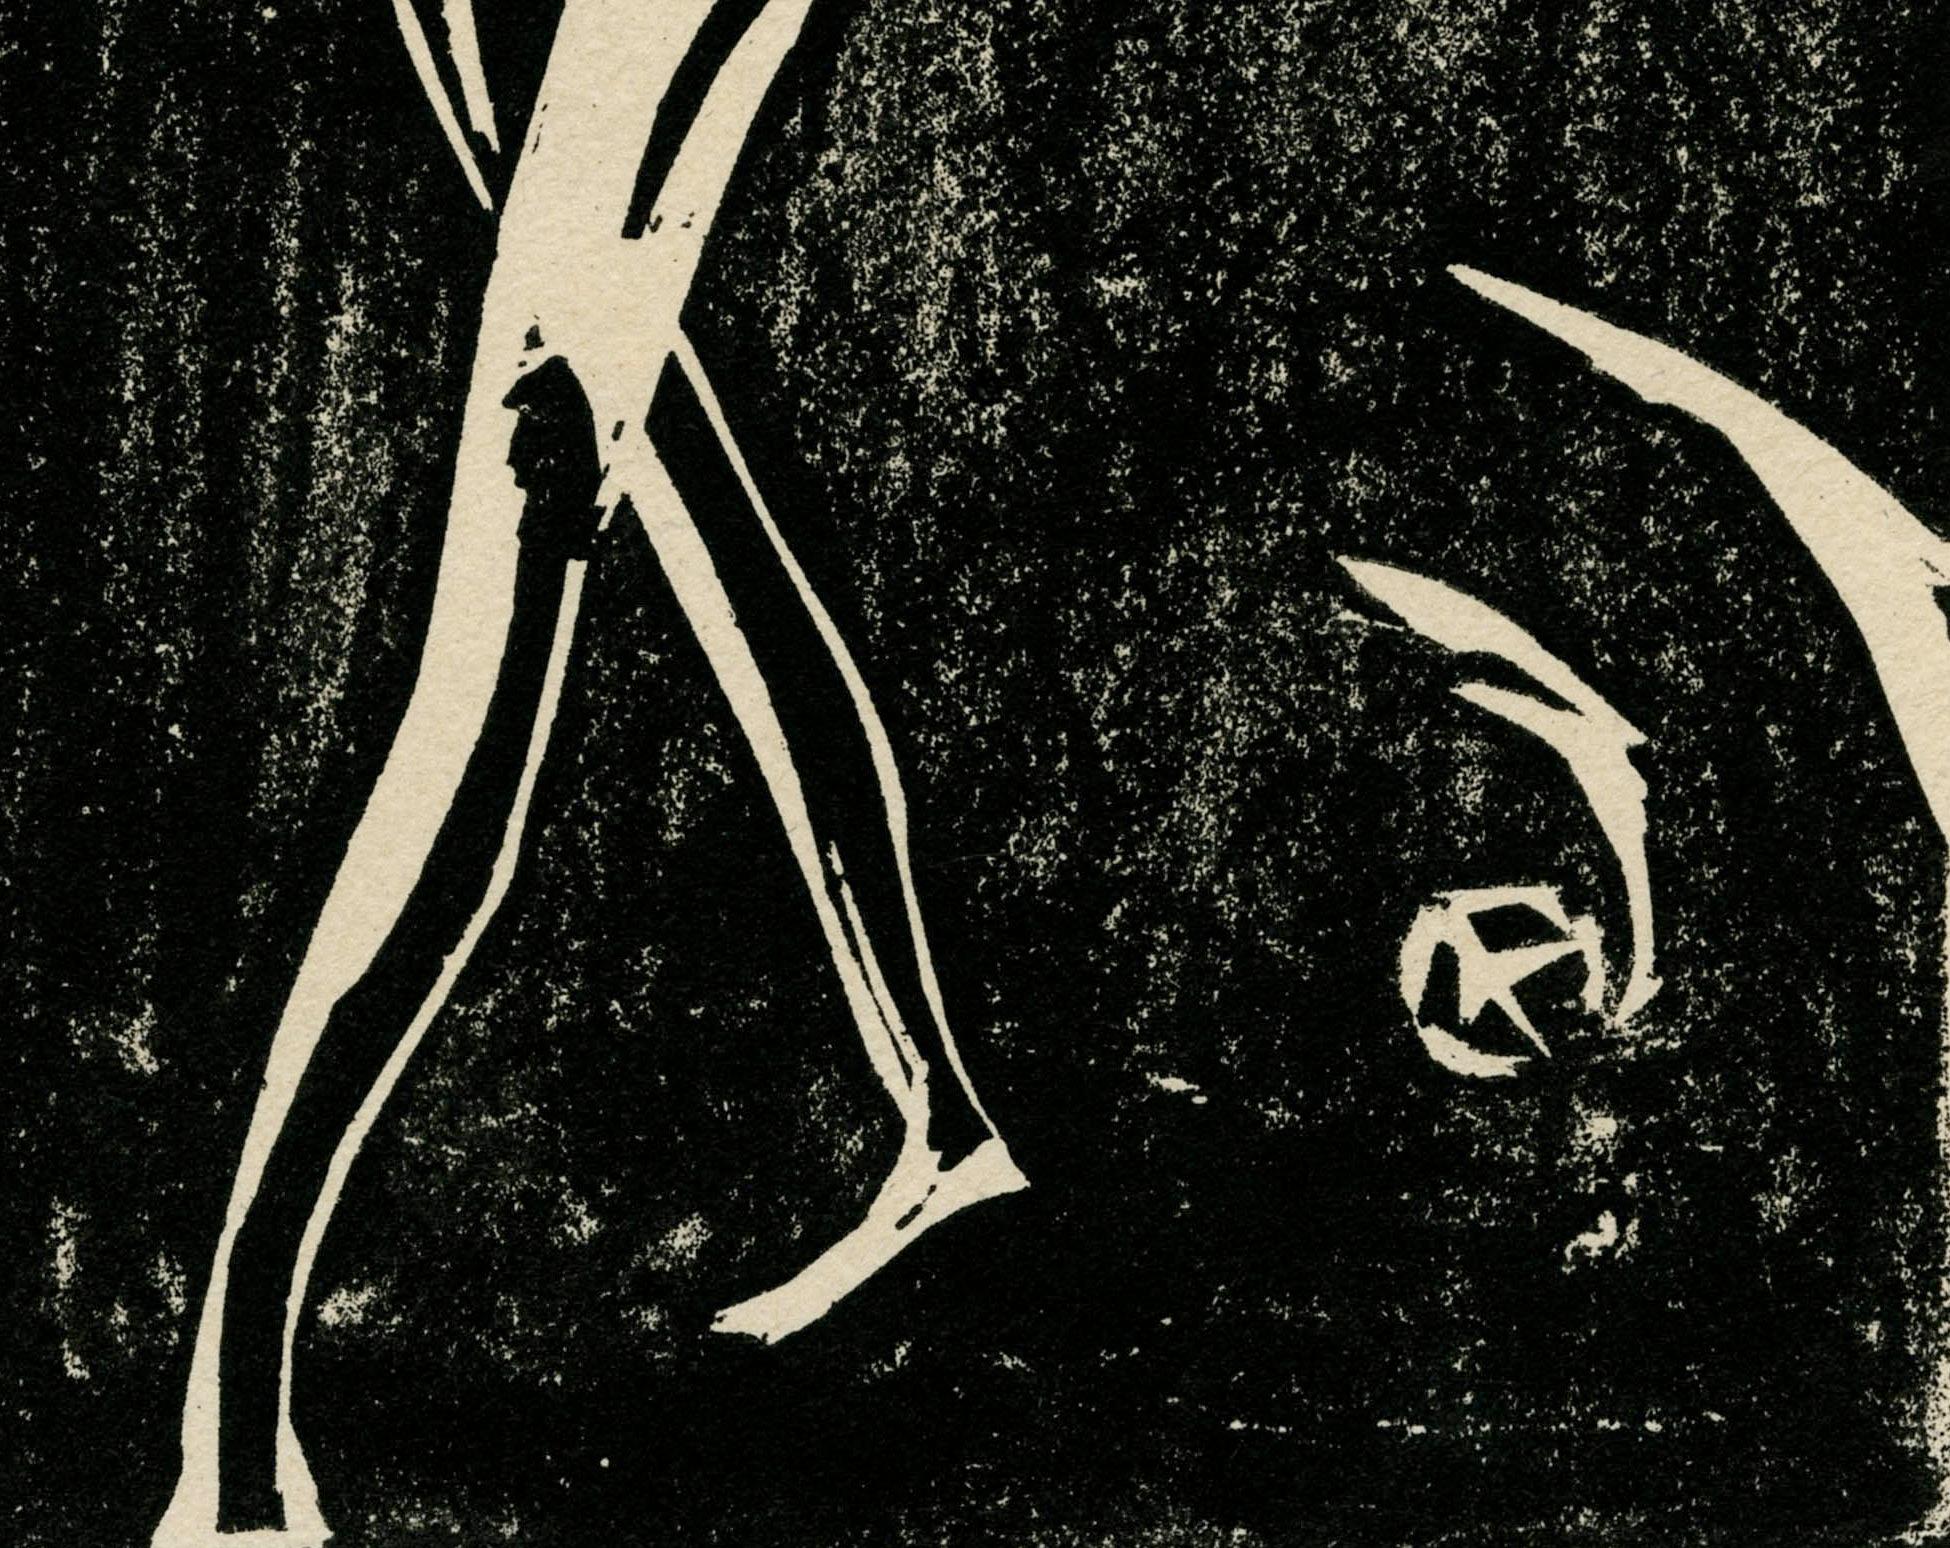 Ecce Homo Assiette X
Gravure sur bois, 1921
Signé, titré et daté au crayon par l'artiste (voir photos).
Édition : Une des deux impressions connues
Cette image était inconnue de la catalogueuse Ingrid Rose en 1984 lorsqu'elle a publié le catalogue